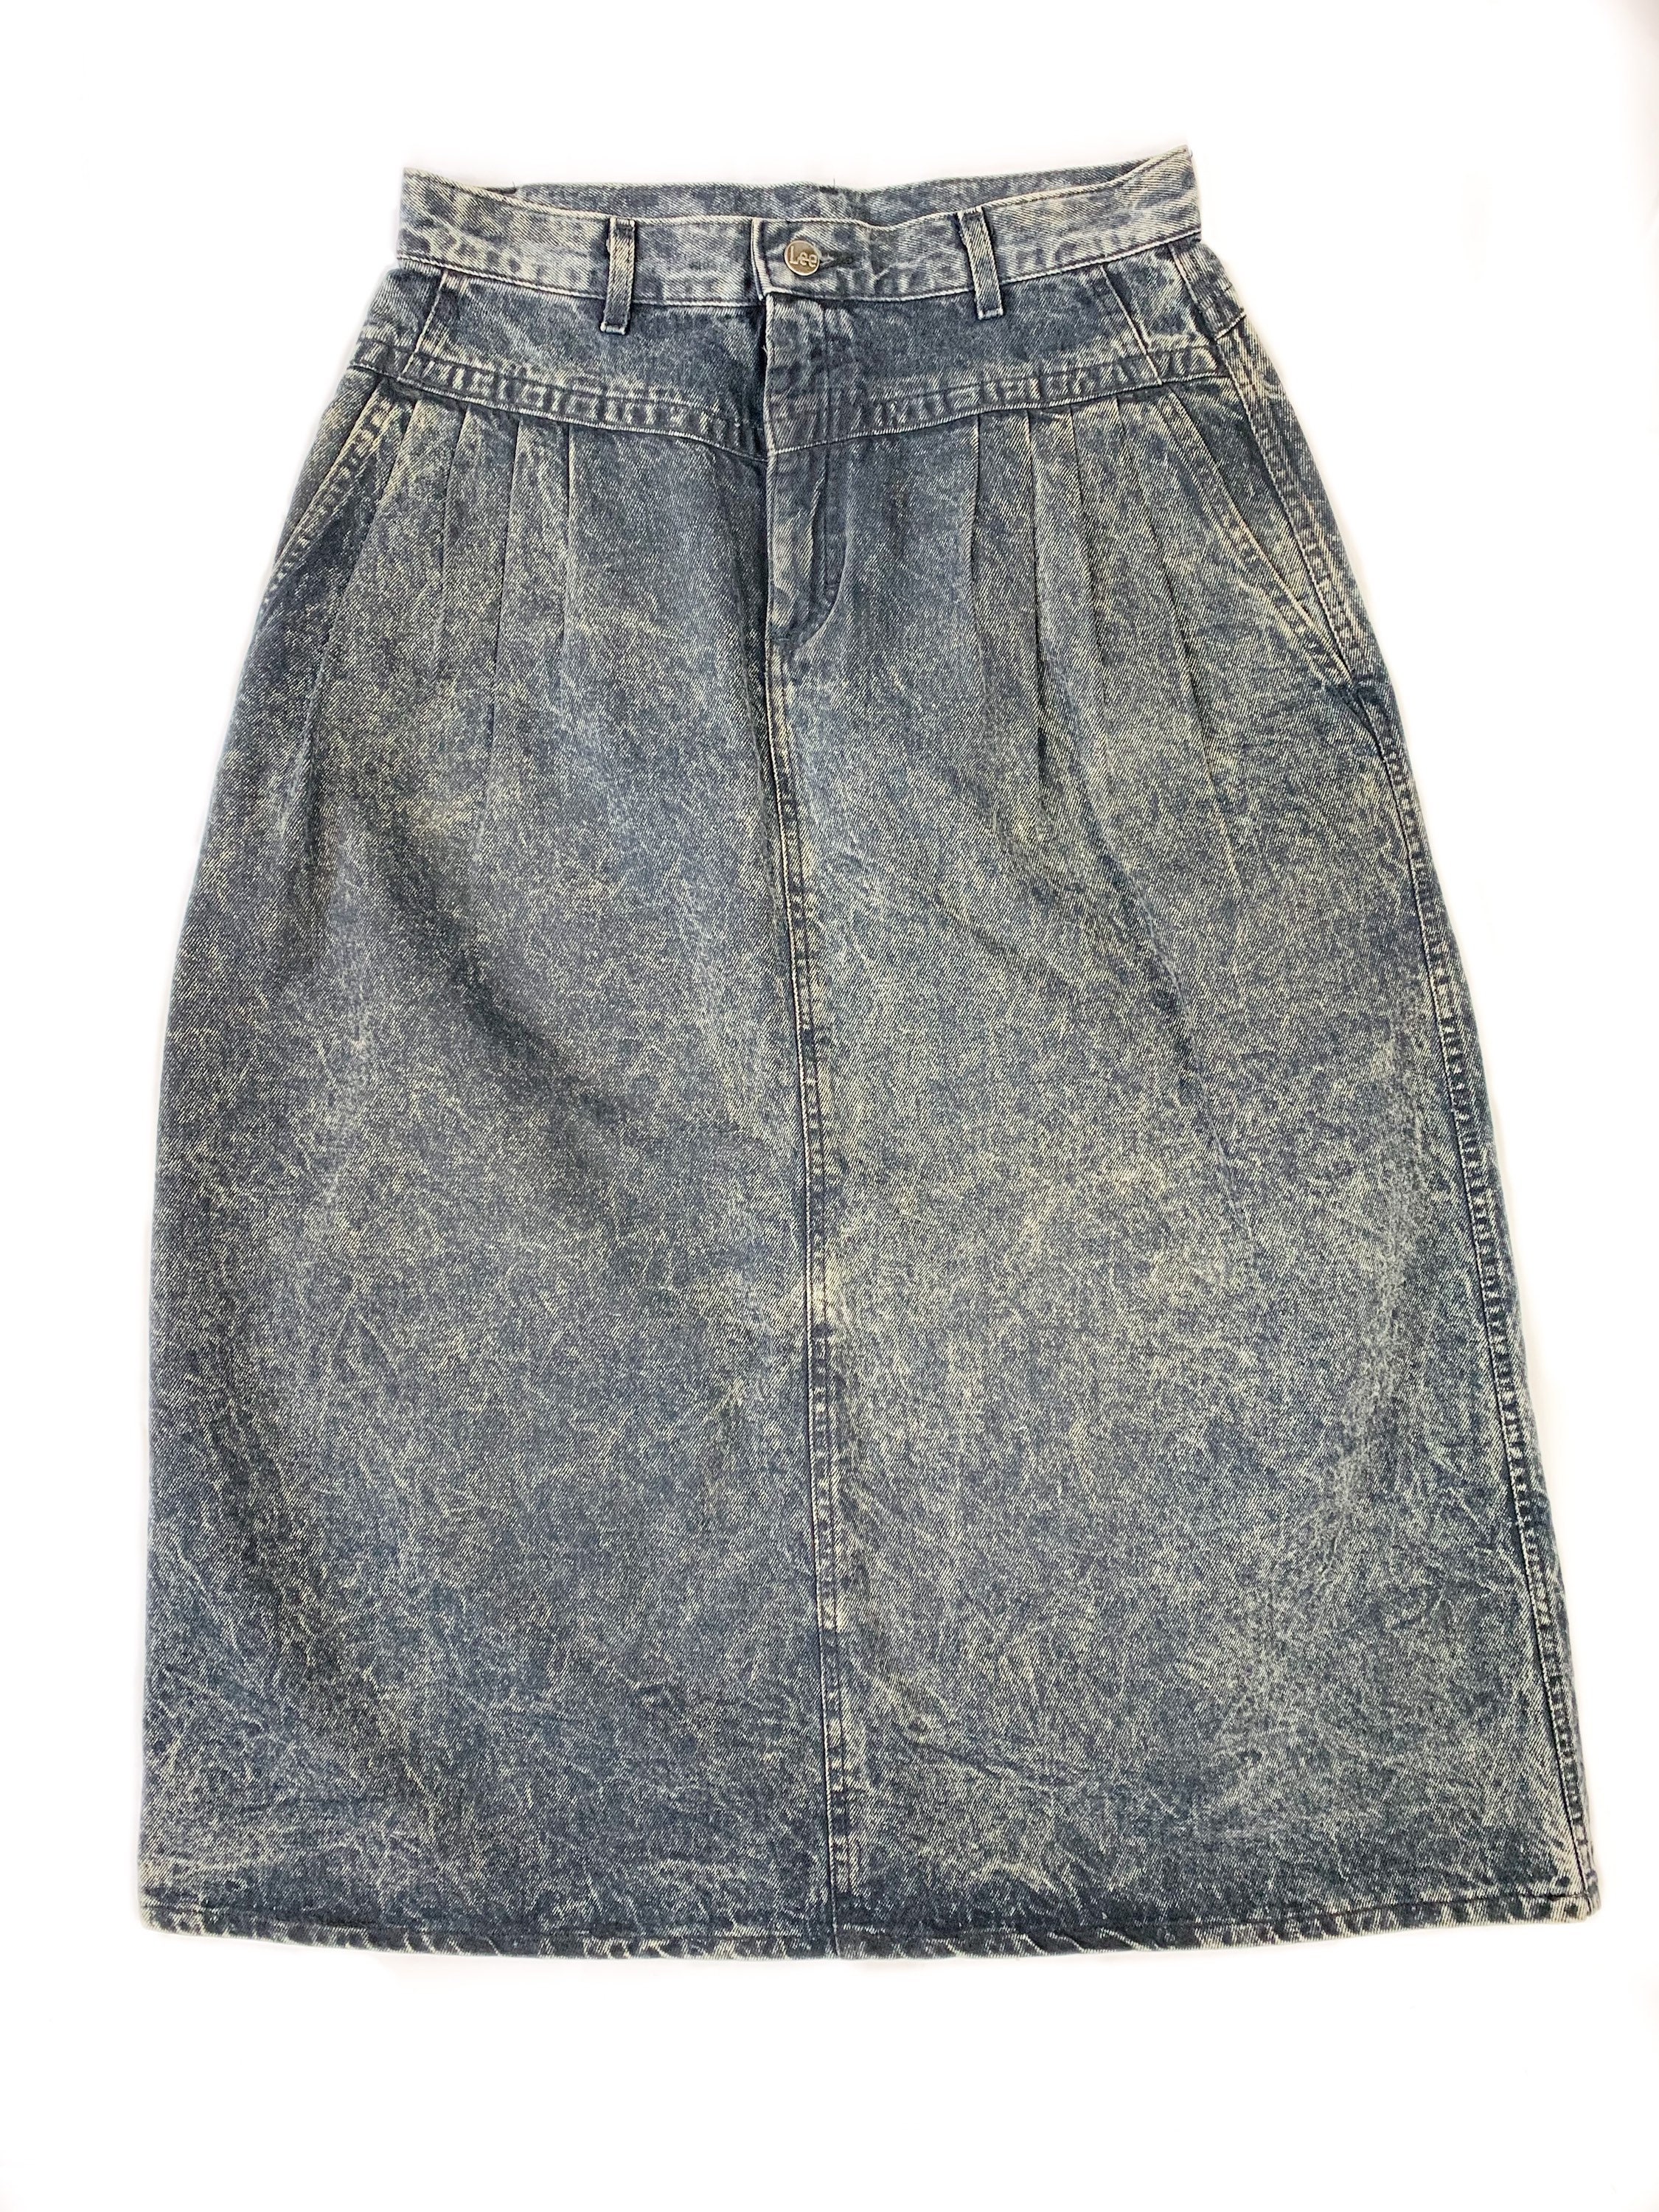 Vintage 1980s Lee Denim Acid Wash Skirt Size 14 - Etsy